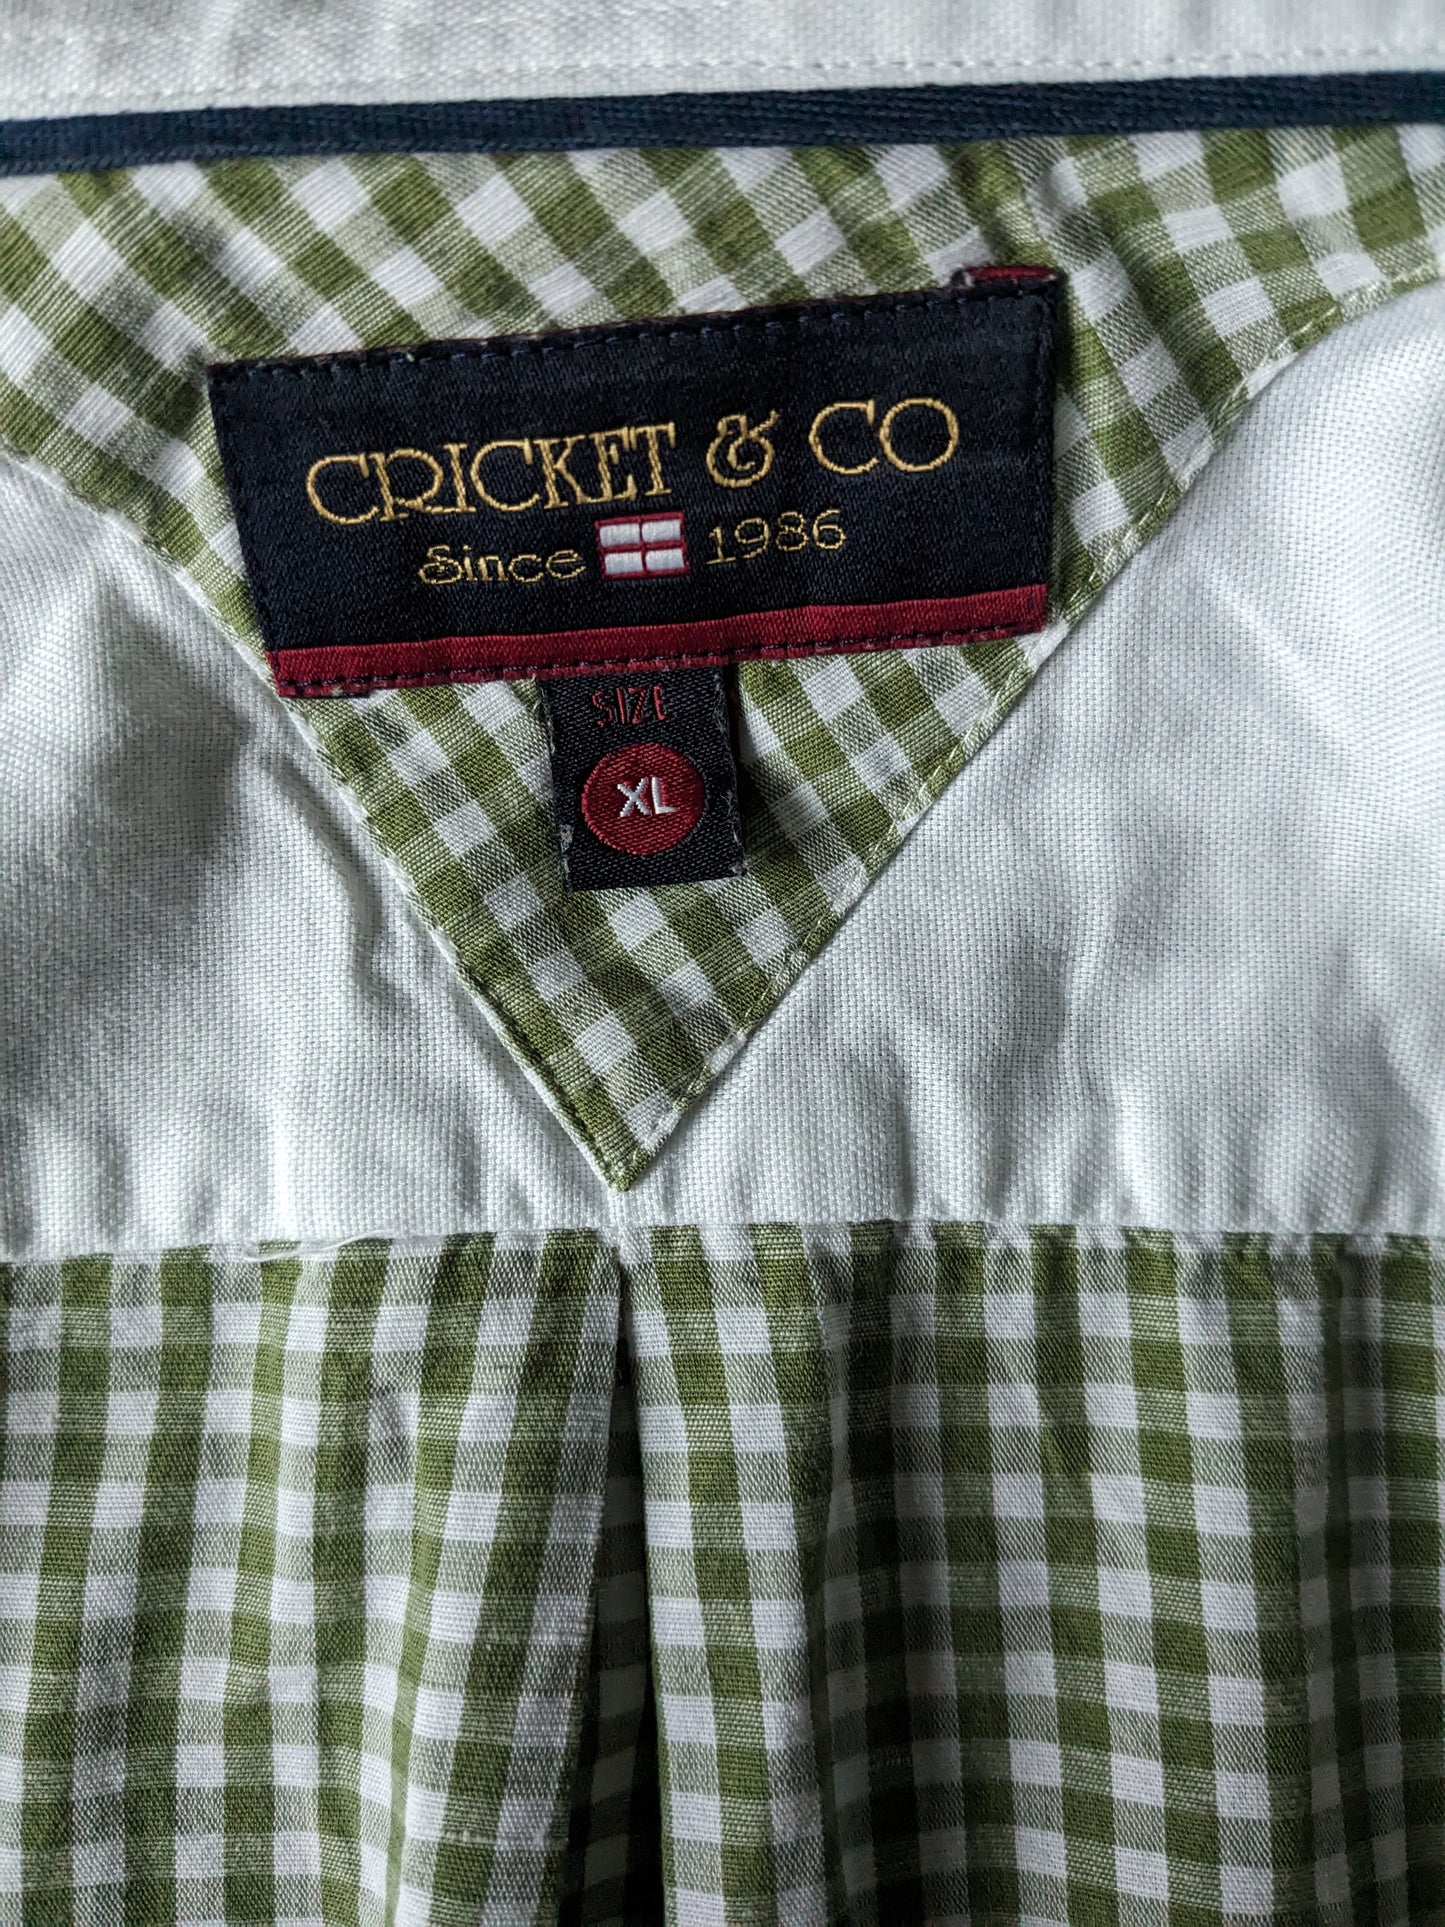 Cricket & Co overhemd. Groen wit geblokt. Maat XL.